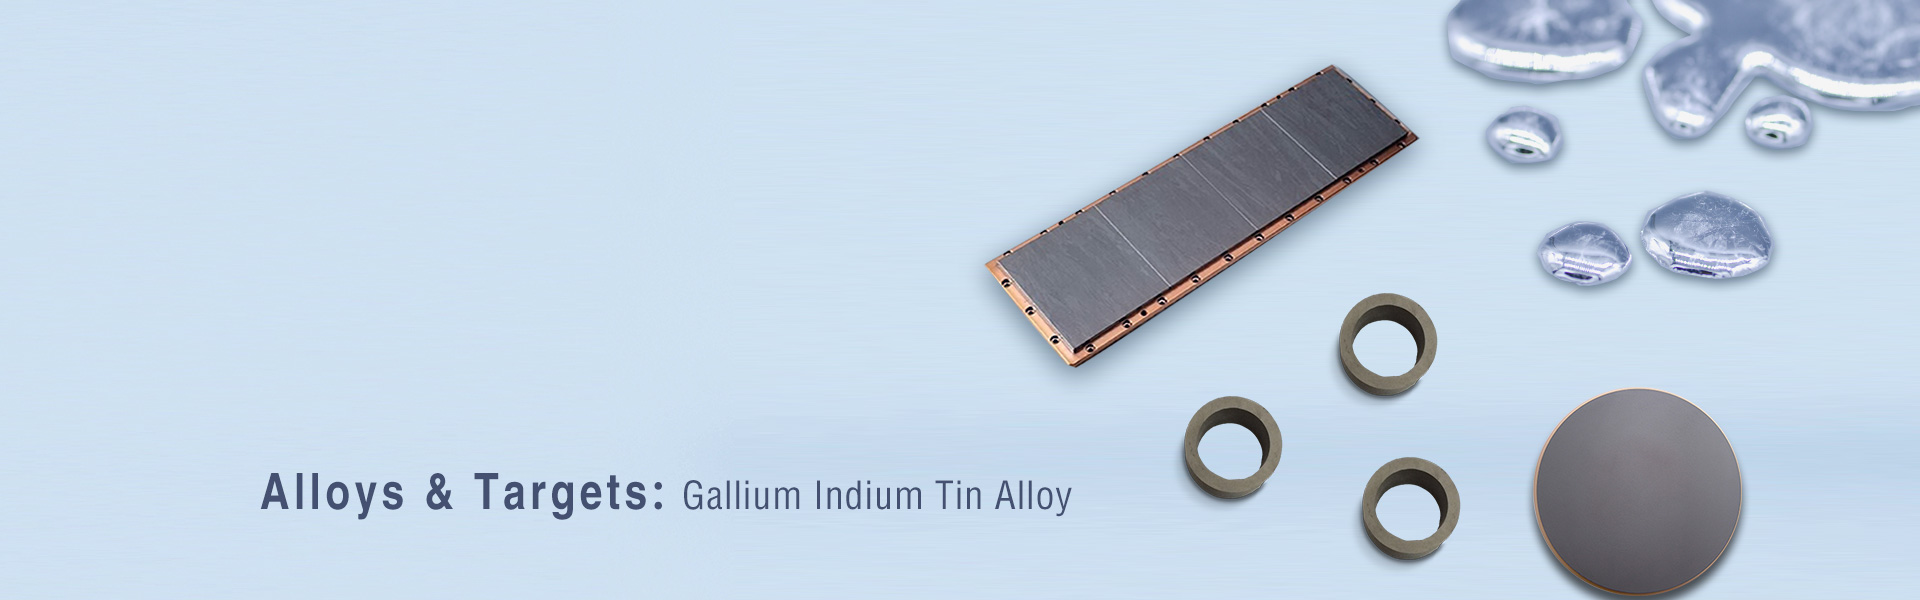 Gallium Indium Tin Alloy